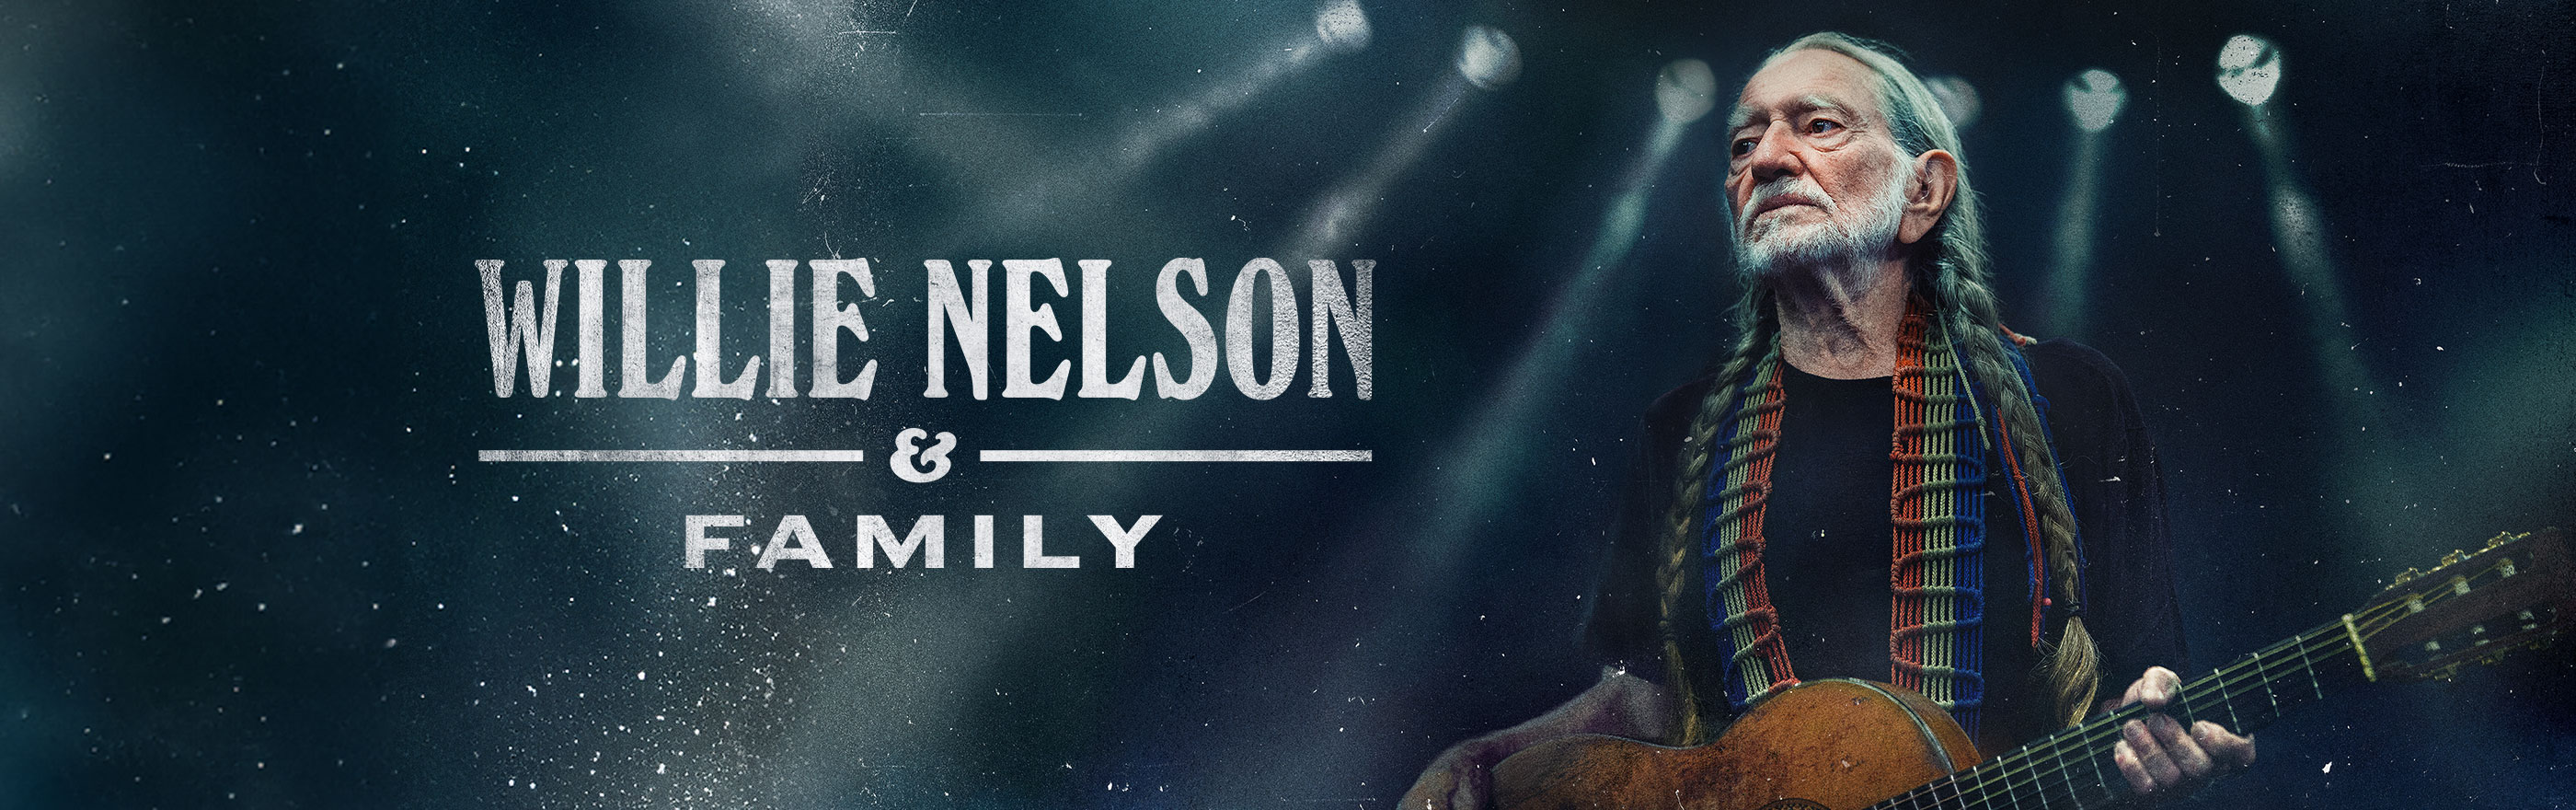 Willie Nelson & Family LOGO